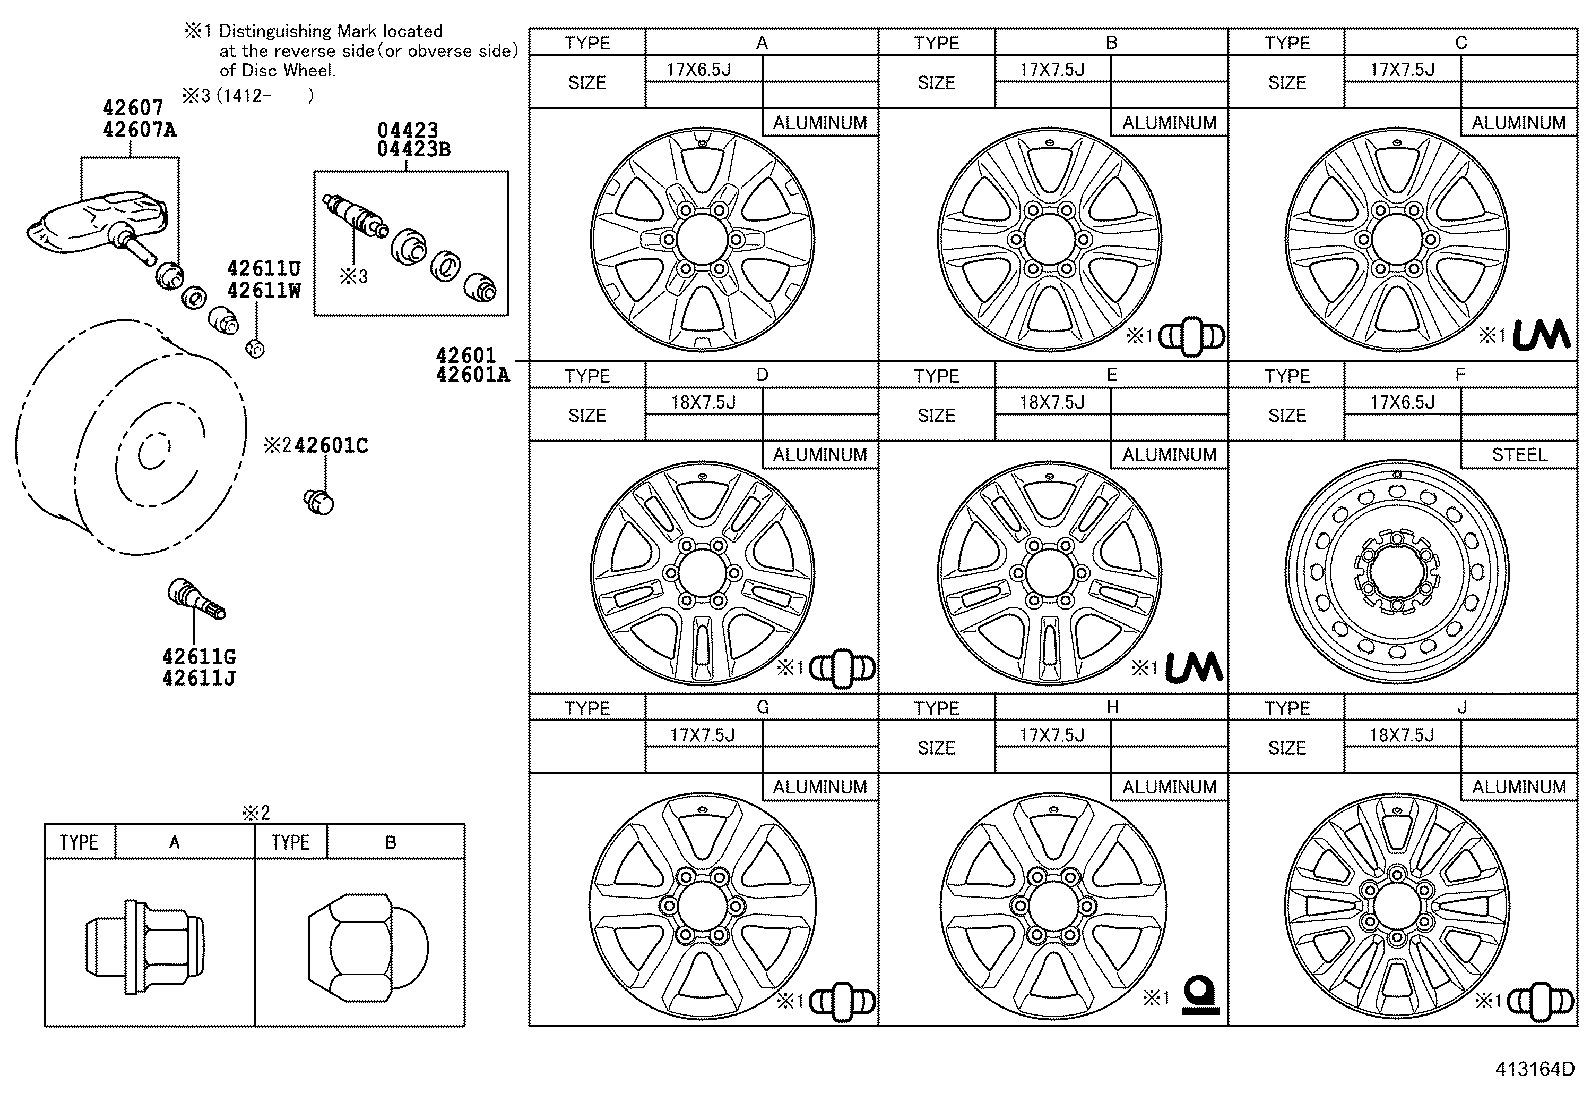 Mobiletron TX-S066 - Датчик контроля давления в шинах Toyota autodnr.net